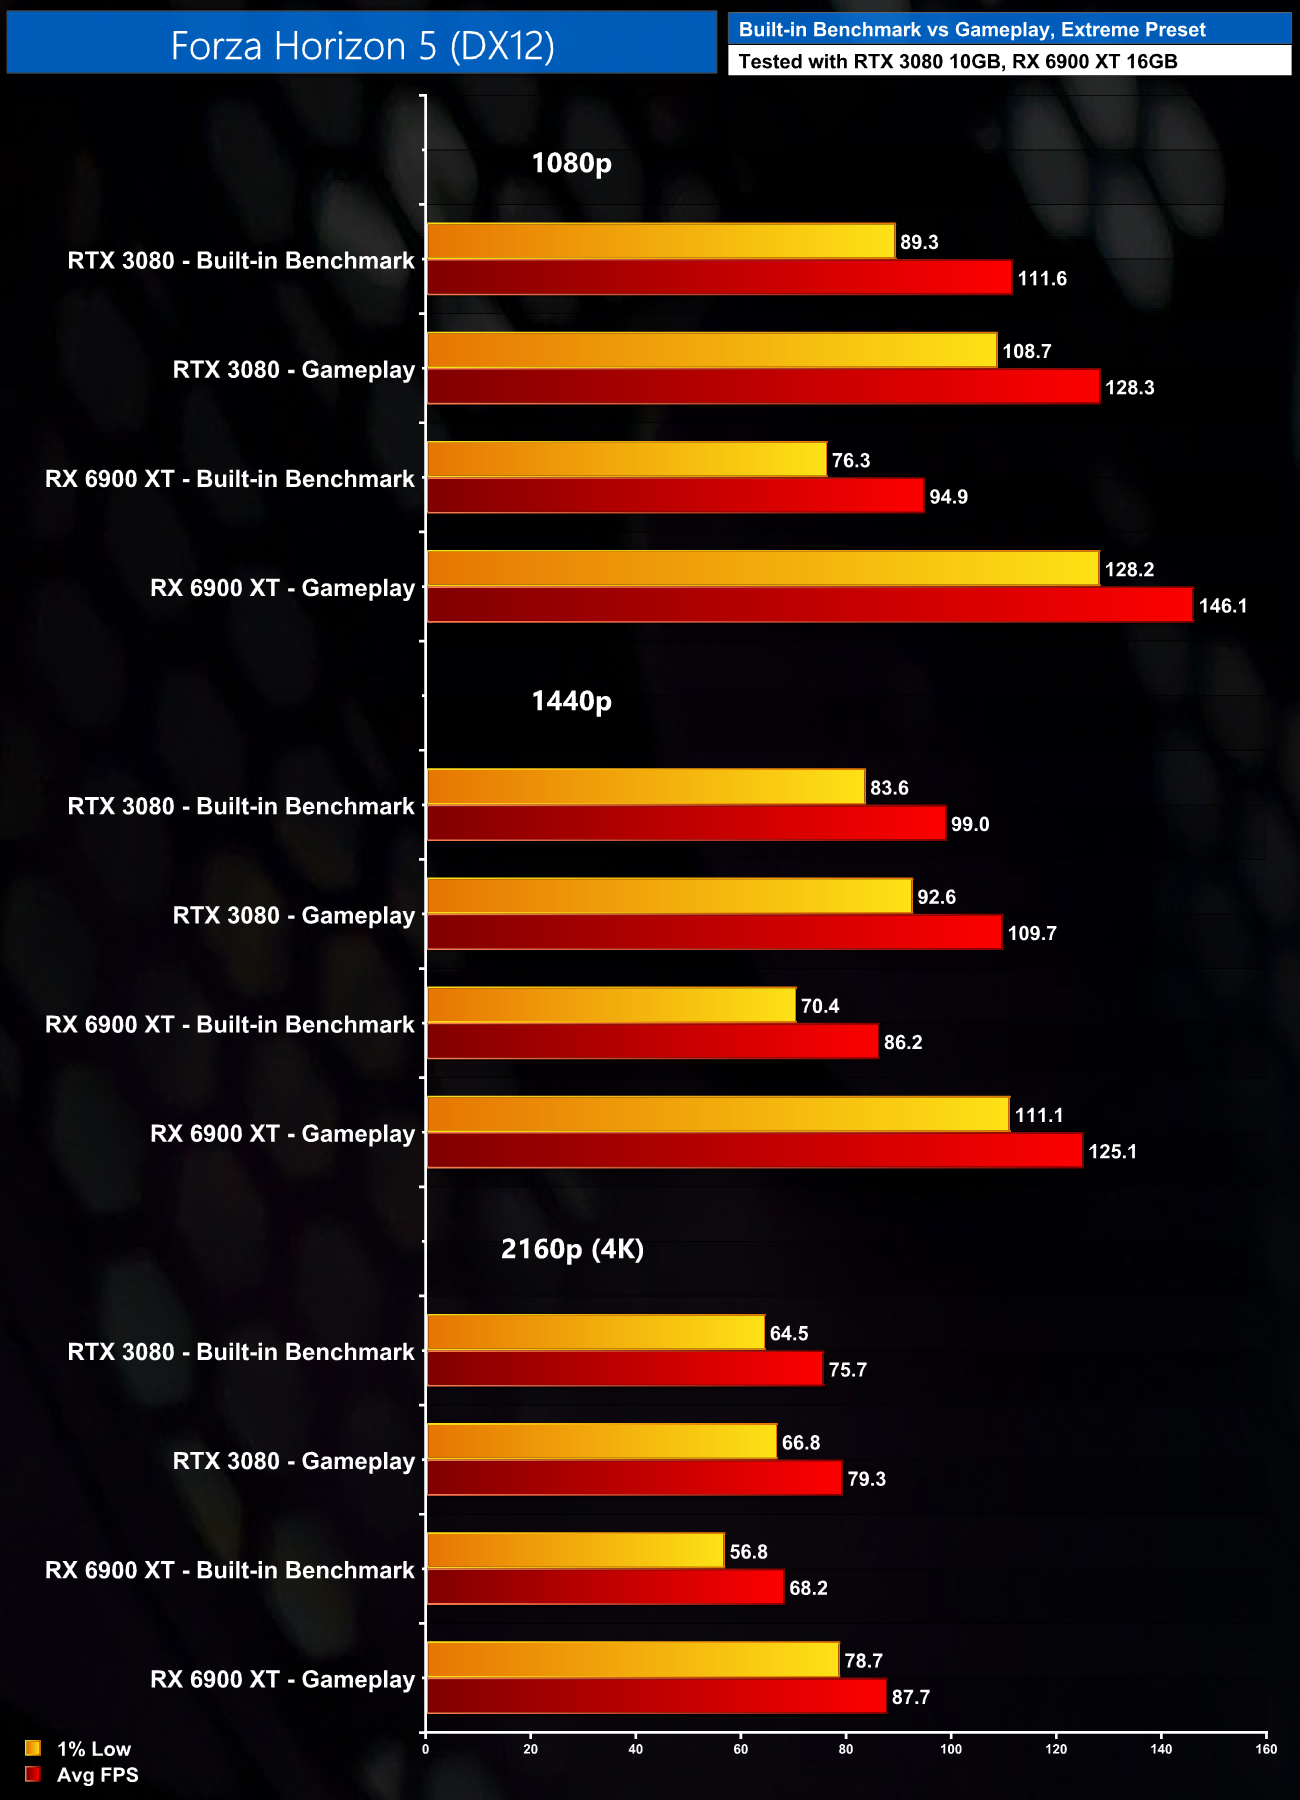 Forza Horizon 3 - PC Performance Analysis